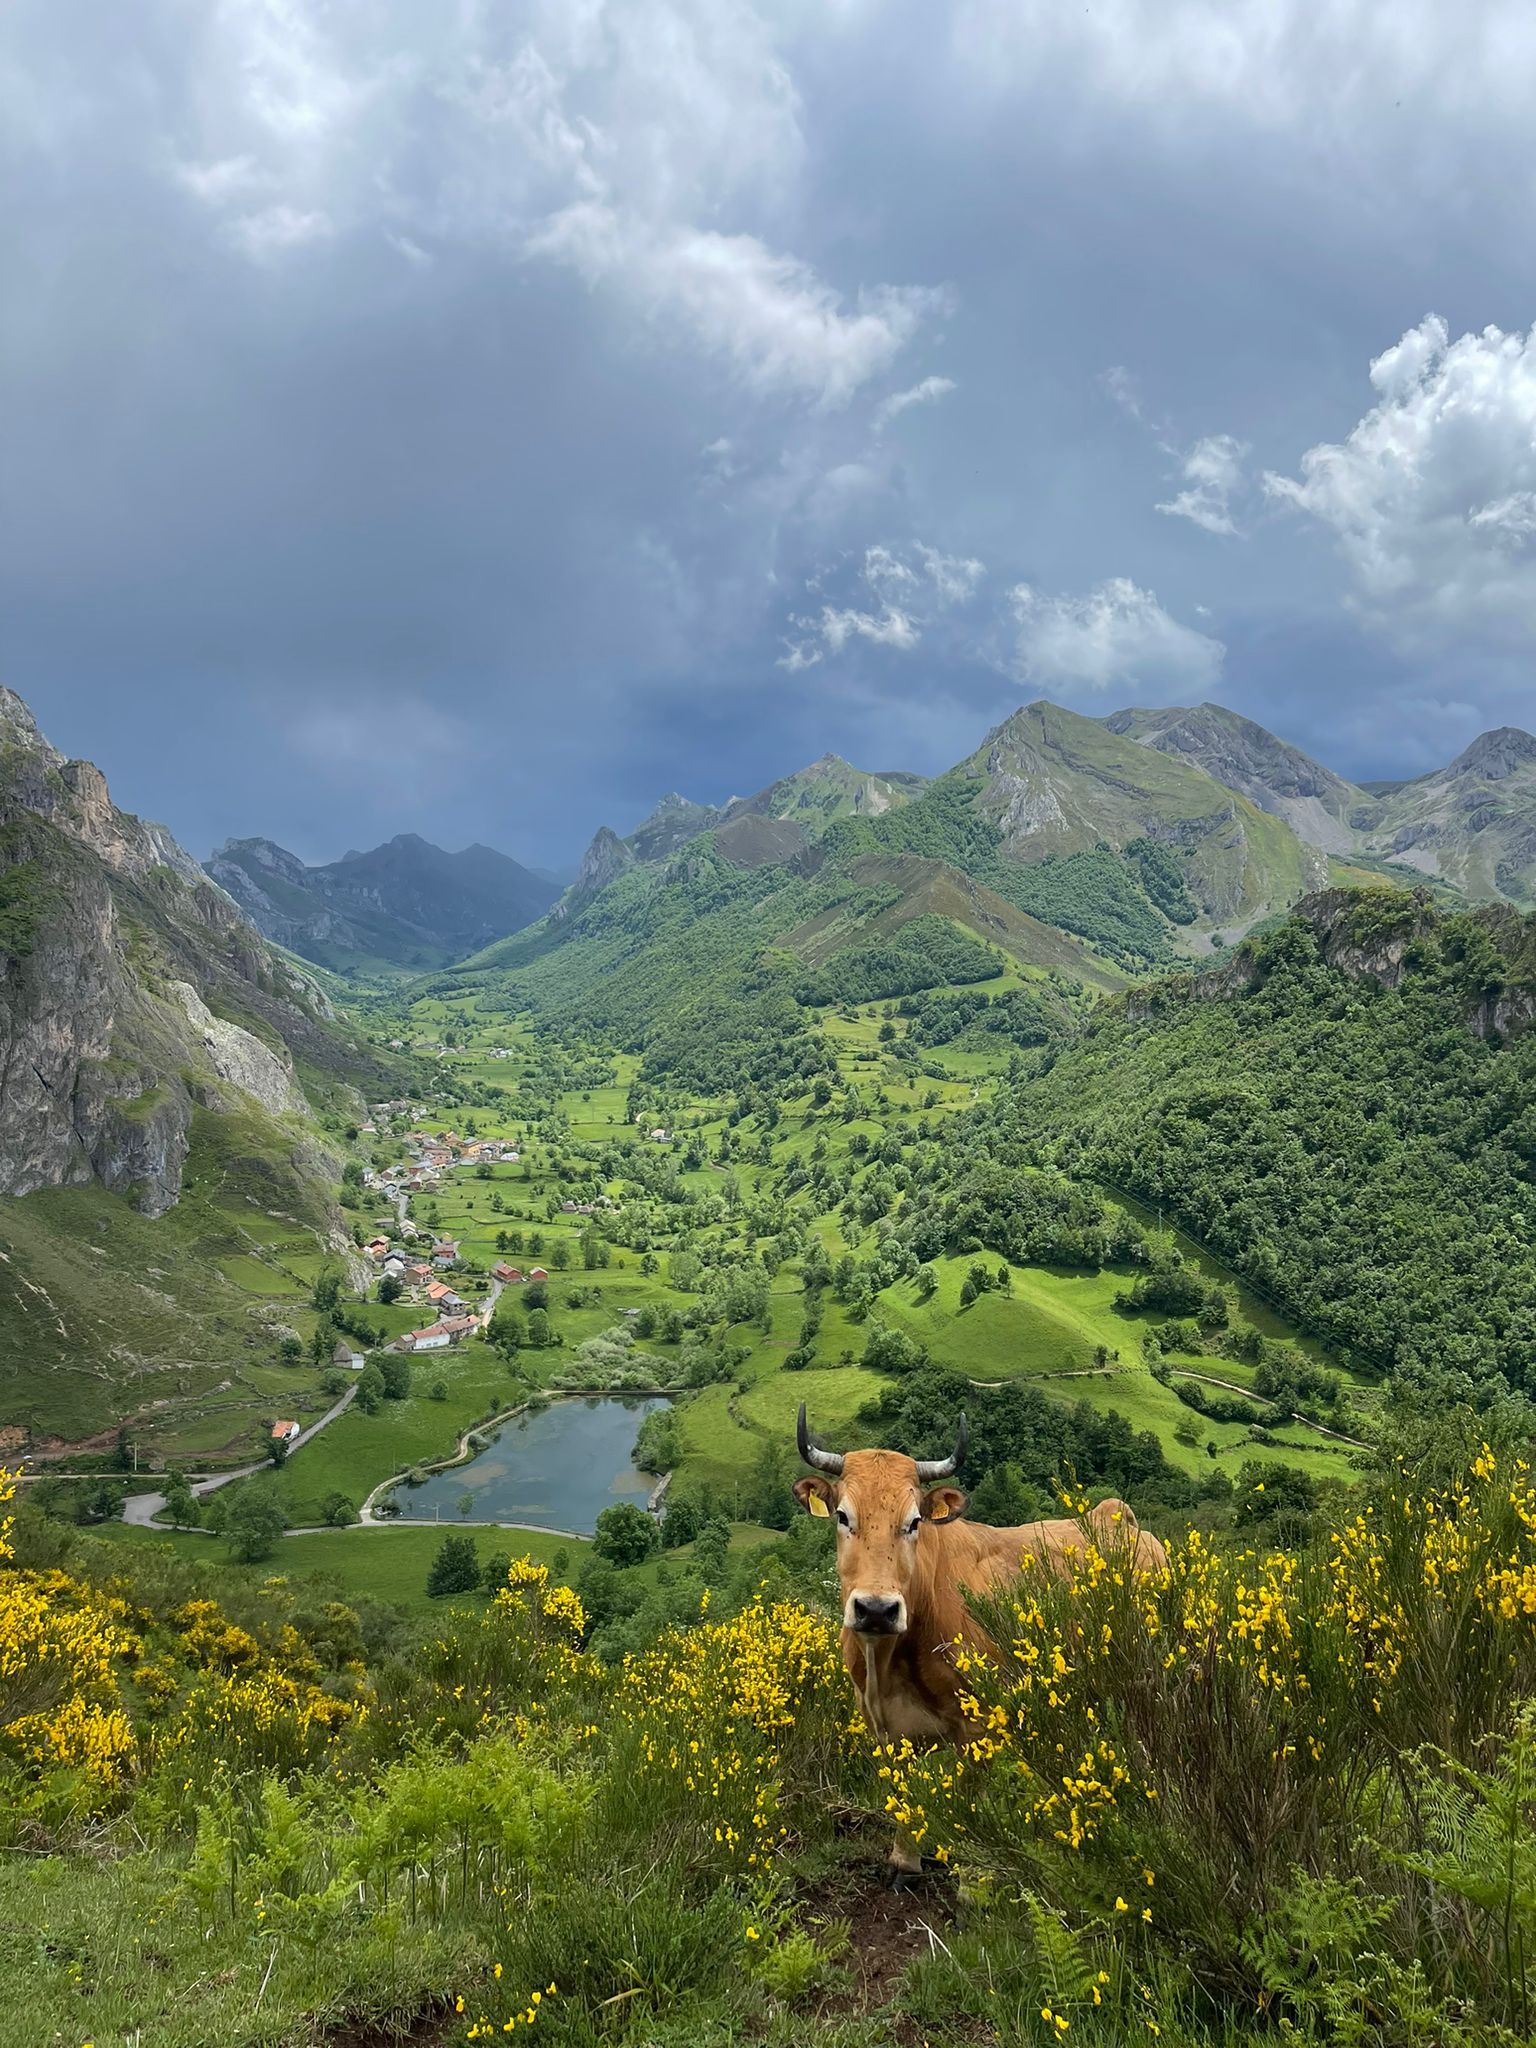 Vaca en paisaje montañoso verde con lago.